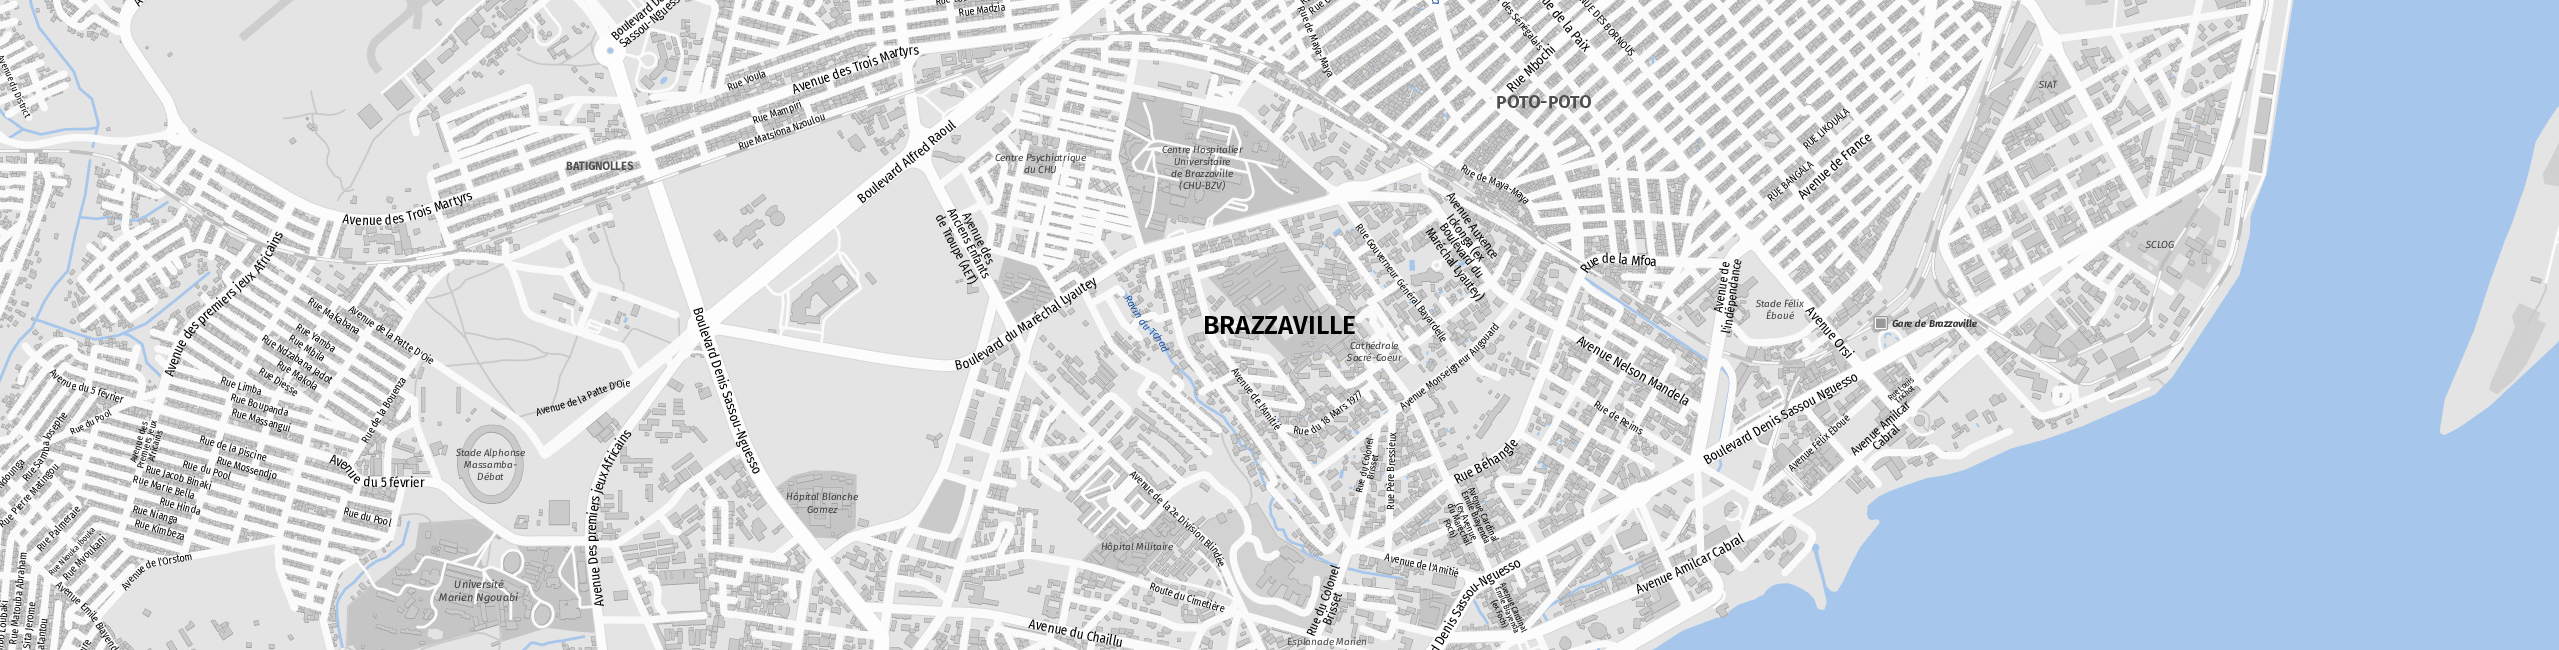 Stadtplan Brazzaville zum Downloaden.